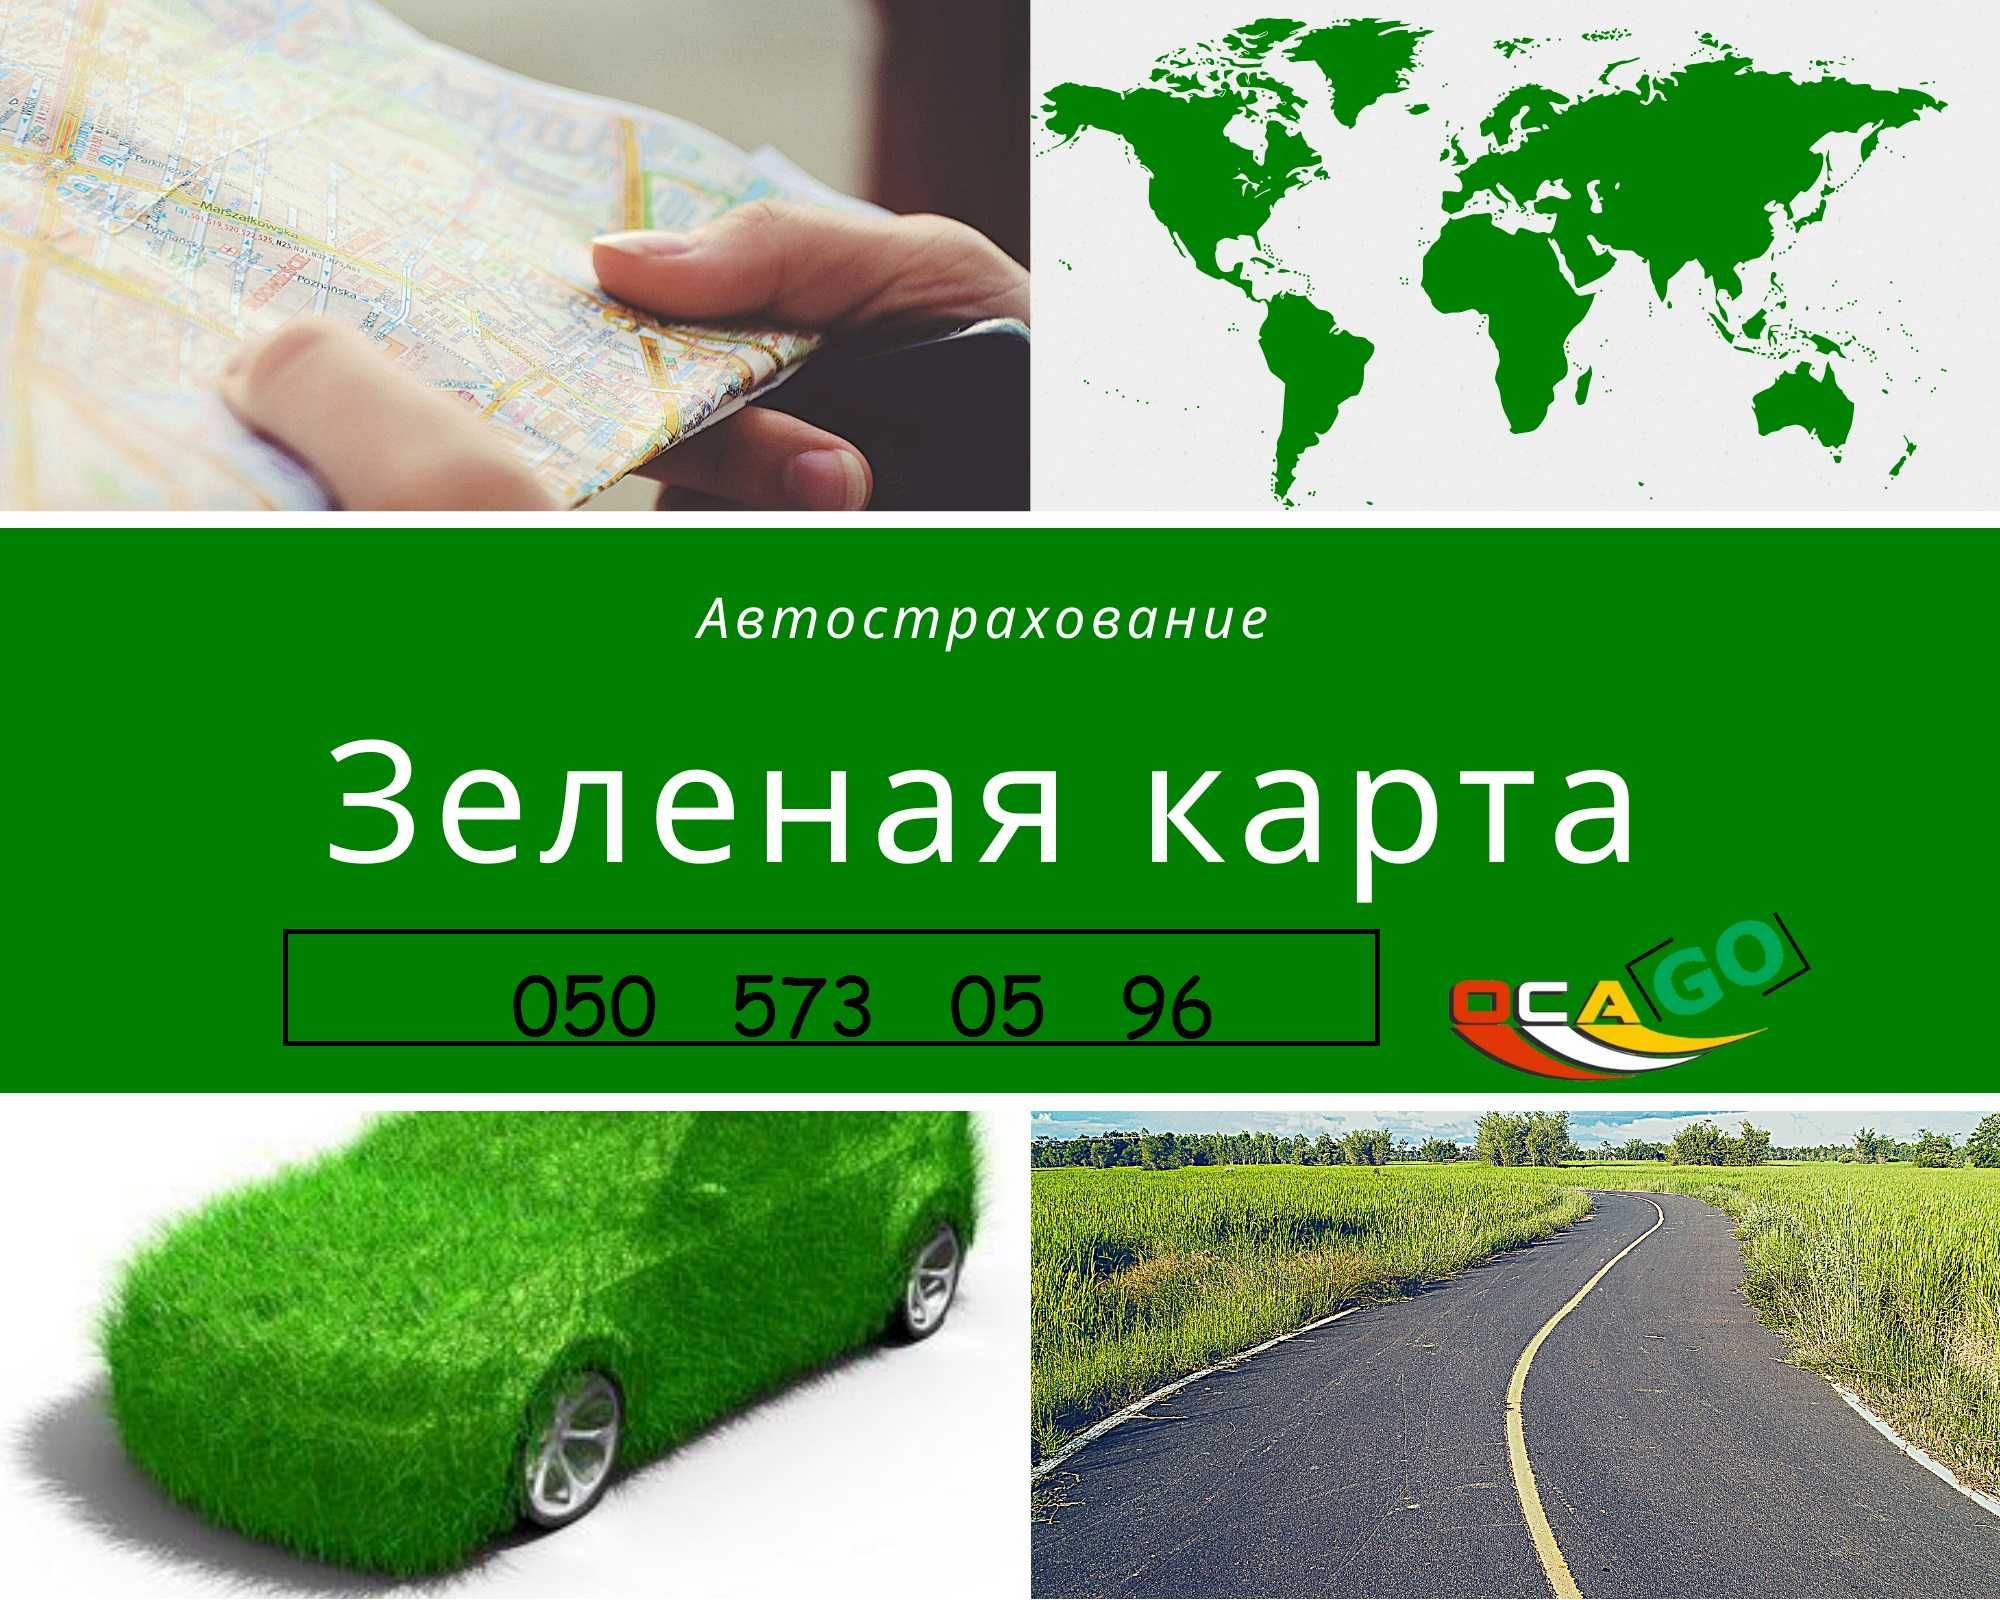 Зелёная карта в Европу/Грин-карта на машину/15 дней/1 год